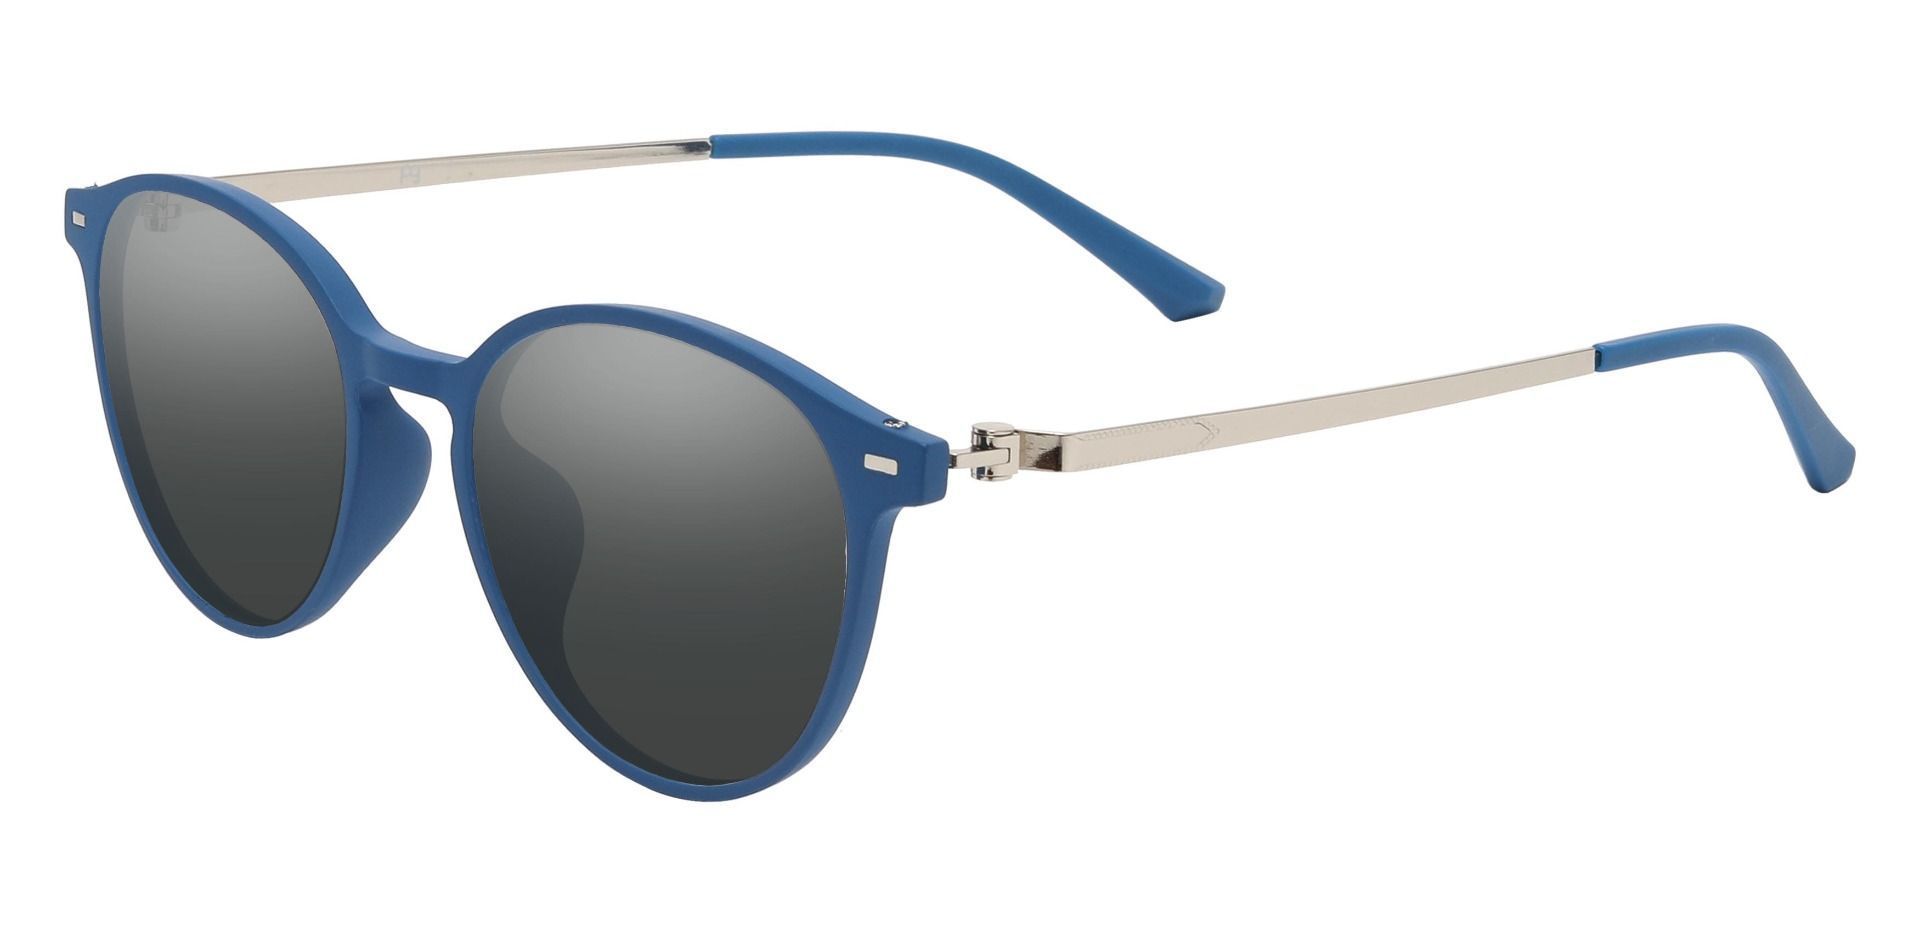 Springer Round Reading Sunglasses - Blue Frame With Gray Lenses